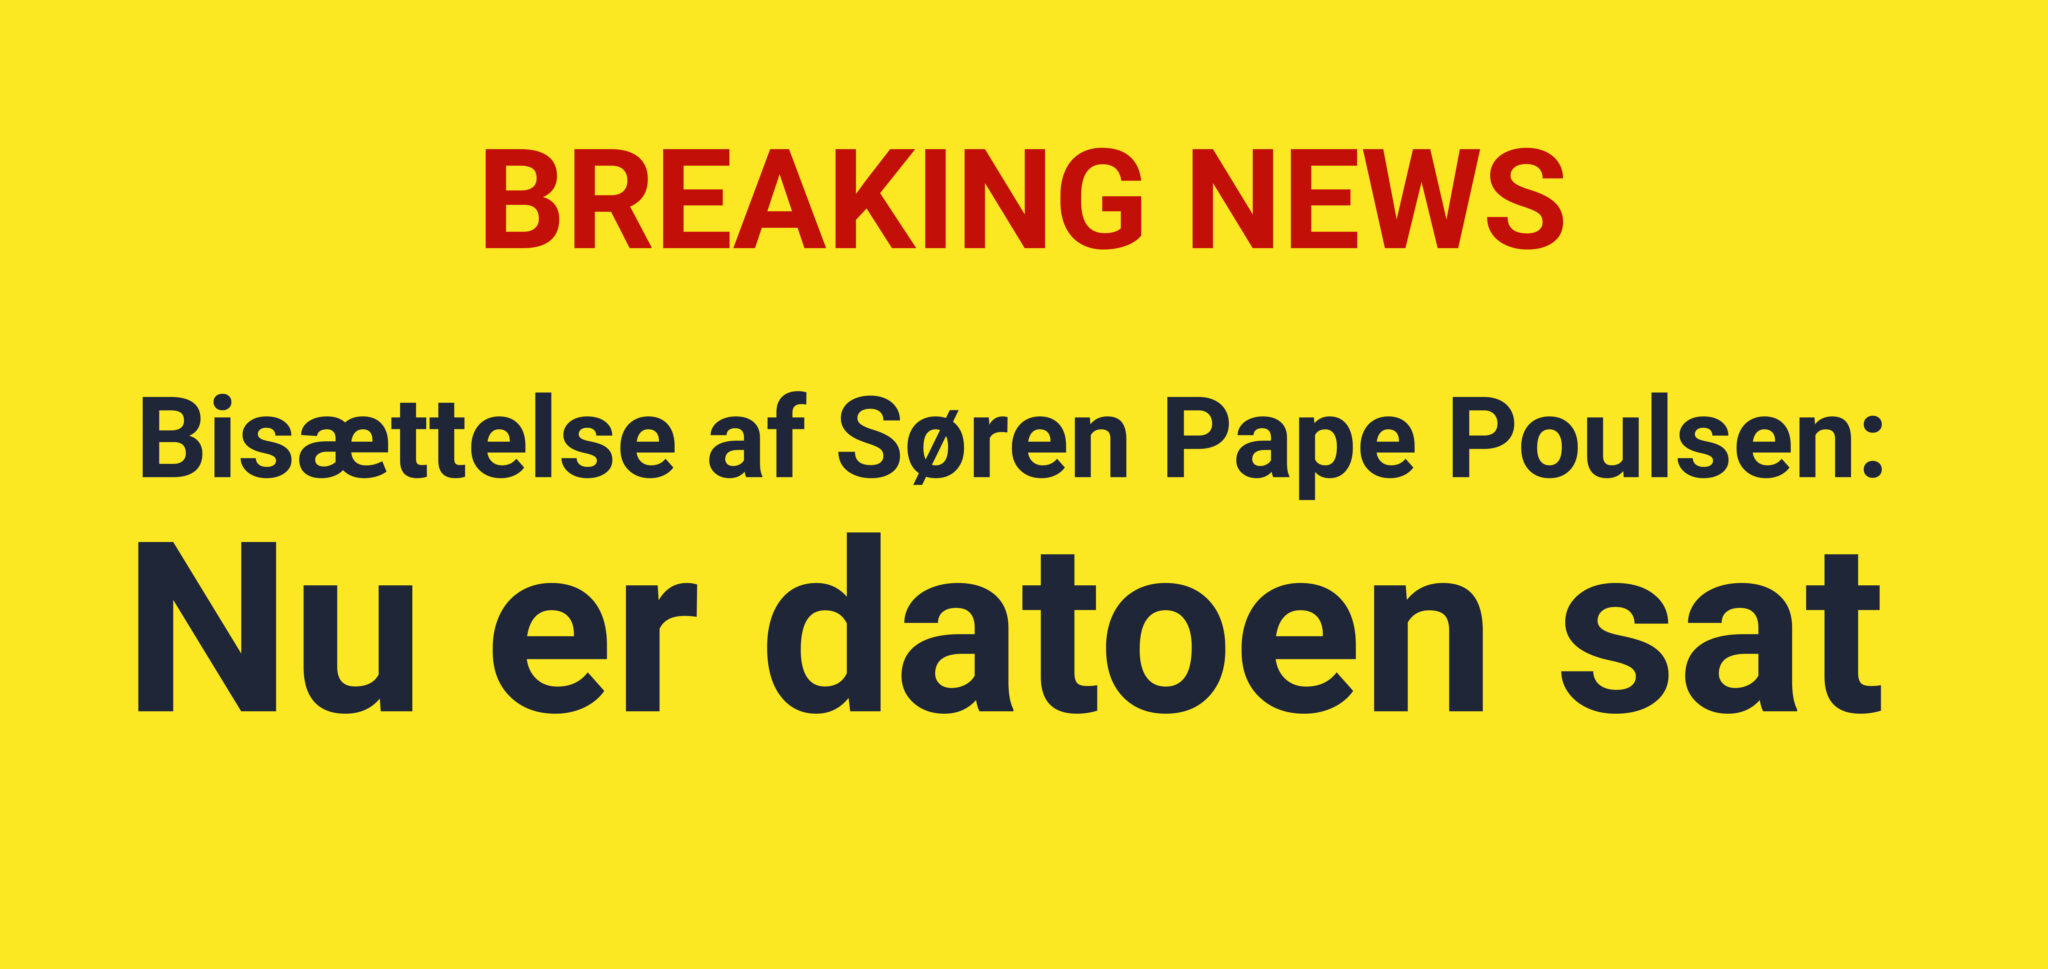 Datoen for den afdøde Søren Pape Poulsens bisættelse er blevet fastlagt.